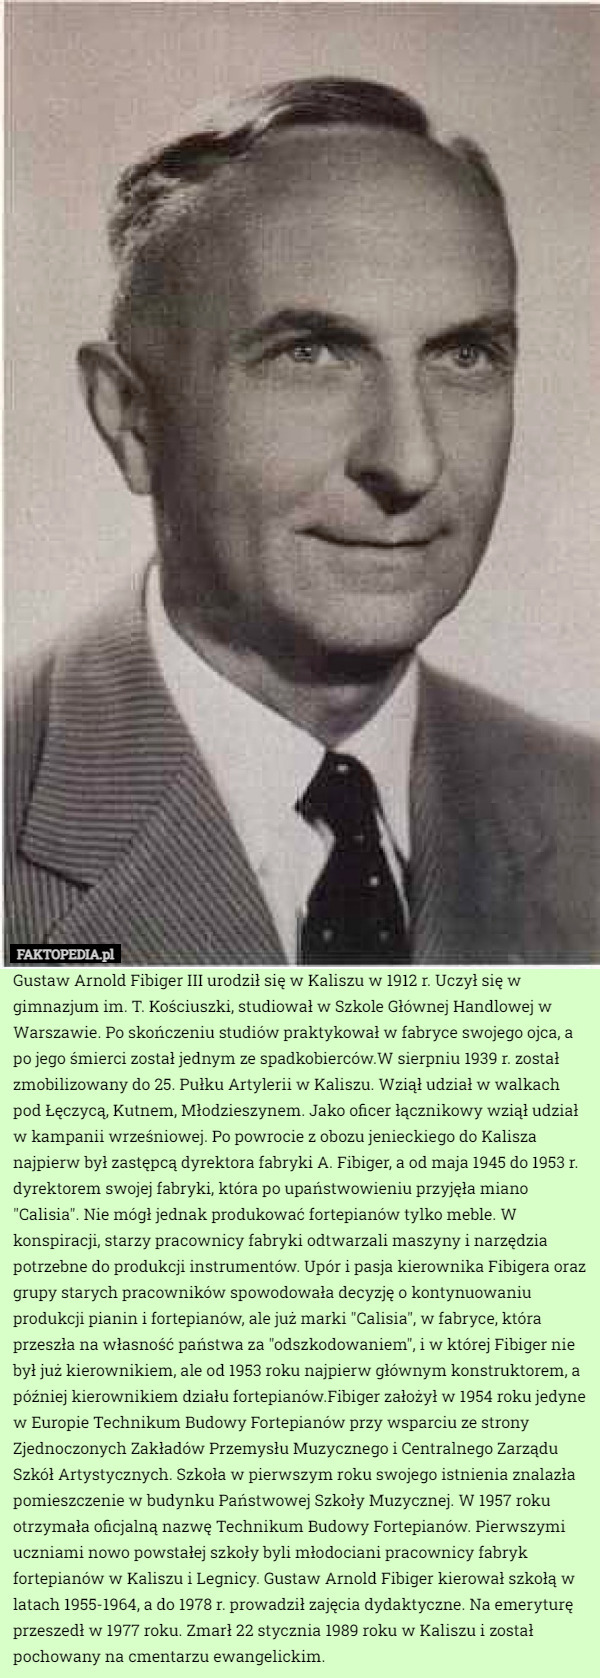 Gustaw Arnold Fibiger III urodził się w Kaliszu w 1912 r. Uczył się w gimnazjum im. T. Kościuszki, studiował w Szkole Głównej Handlowej w Warszawie. Po skończeniu studiów praktykował w fabryce swojego ojca, a po jego śmierci został jednym ze spadkobierców.W sierpniu 1939 r. został zmobilizowany do 25. Pułku Artylerii w Kaliszu. Wziął udział w walkach pod Łęczycą, Kutnem, Młodzieszynem. Jako oficer łącznikowy wziął udział w kampanii wrześniowej. Po powrocie z obozu jenieckiego do Kalisza najpierw był zastępcą dyrektora fabryki A. Fibiger, a od maja 1945 do 1953 r. dyrektorem swojej fabryki, która po upaństwowieniu przyjęła miano "Calisia". Nie mógł jednak produkować fortepianów tylko meble. W konspiracji, starzy pracownicy fabryki odtwarzali maszyny i narzędzia potrzebne do produkcji instrumentów. Upór i pasja kierownika Fibigera oraz grupy starych pracowników spowodowała decyzję o kontynuowaniu produkcji pianin i fortepianów, ale już marki "Calisia", w fabryce, która przeszła na własność państwa za "odszkodowaniem", i w której Fibiger nie był już kierownikiem, ale od 1953 roku najpierw głównym konstruktorem, a później kierownikiem działu fortepianów.Fibiger założył w 1954 roku jedyne w Europie Technikum Budowy Fortepianów przy wsparciu ze strony Zjednoczonych Zakładów Przemysłu Muzycznego i Centralnego Zarządu Szkół Artystycznych. Szkoła w pierwszym roku swojego istnienia znalazła pomieszczenie w budynku Państwowej Szkoły Muzycznej. W 1957 roku otrzymała oficjalną nazwę Technikum Budowy Fortepianów. Pierwszymi uczniami nowo powstałej szkoły byli młodociani pracownicy fabryk fortepianów w Kaliszu i Legnicy. Gustaw Arnold Fibiger kierował szkołą w latach 1955-1964, a do 1978 r. prowadził zajęcia dydaktyczne. Na emeryturę przeszedł w 1977 roku. Zmarł 22 stycznia 1989 roku w Kaliszu i został pochowany na cmentarzu ewangelickim. 